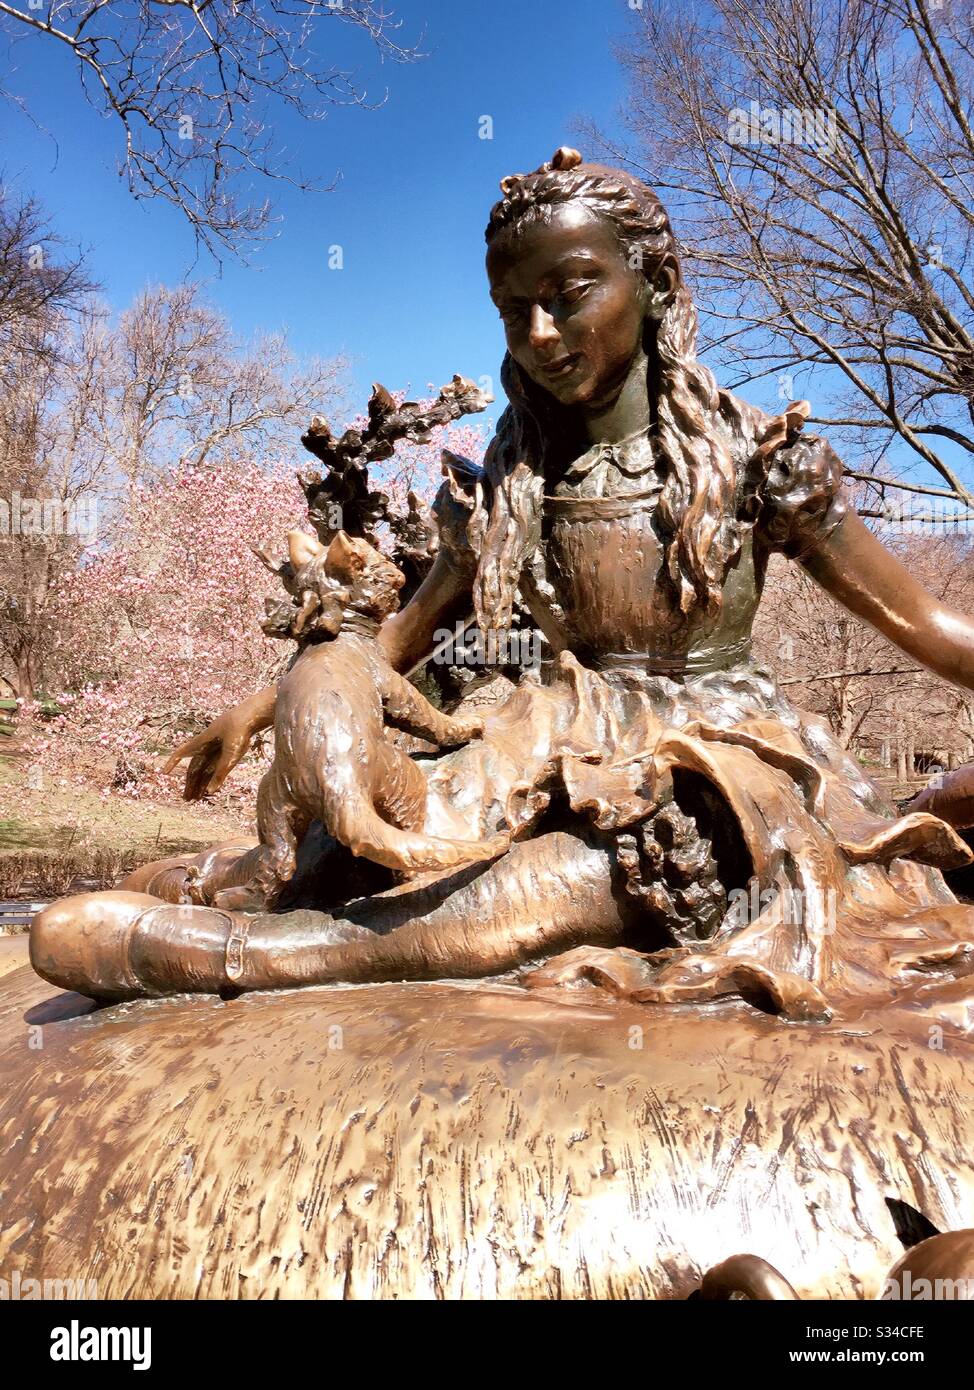 Alice in Wonderland sculpture dans le parc central est entouré de cerisiers en fleurs au printemps, New York, États-Unis Banque D'Images